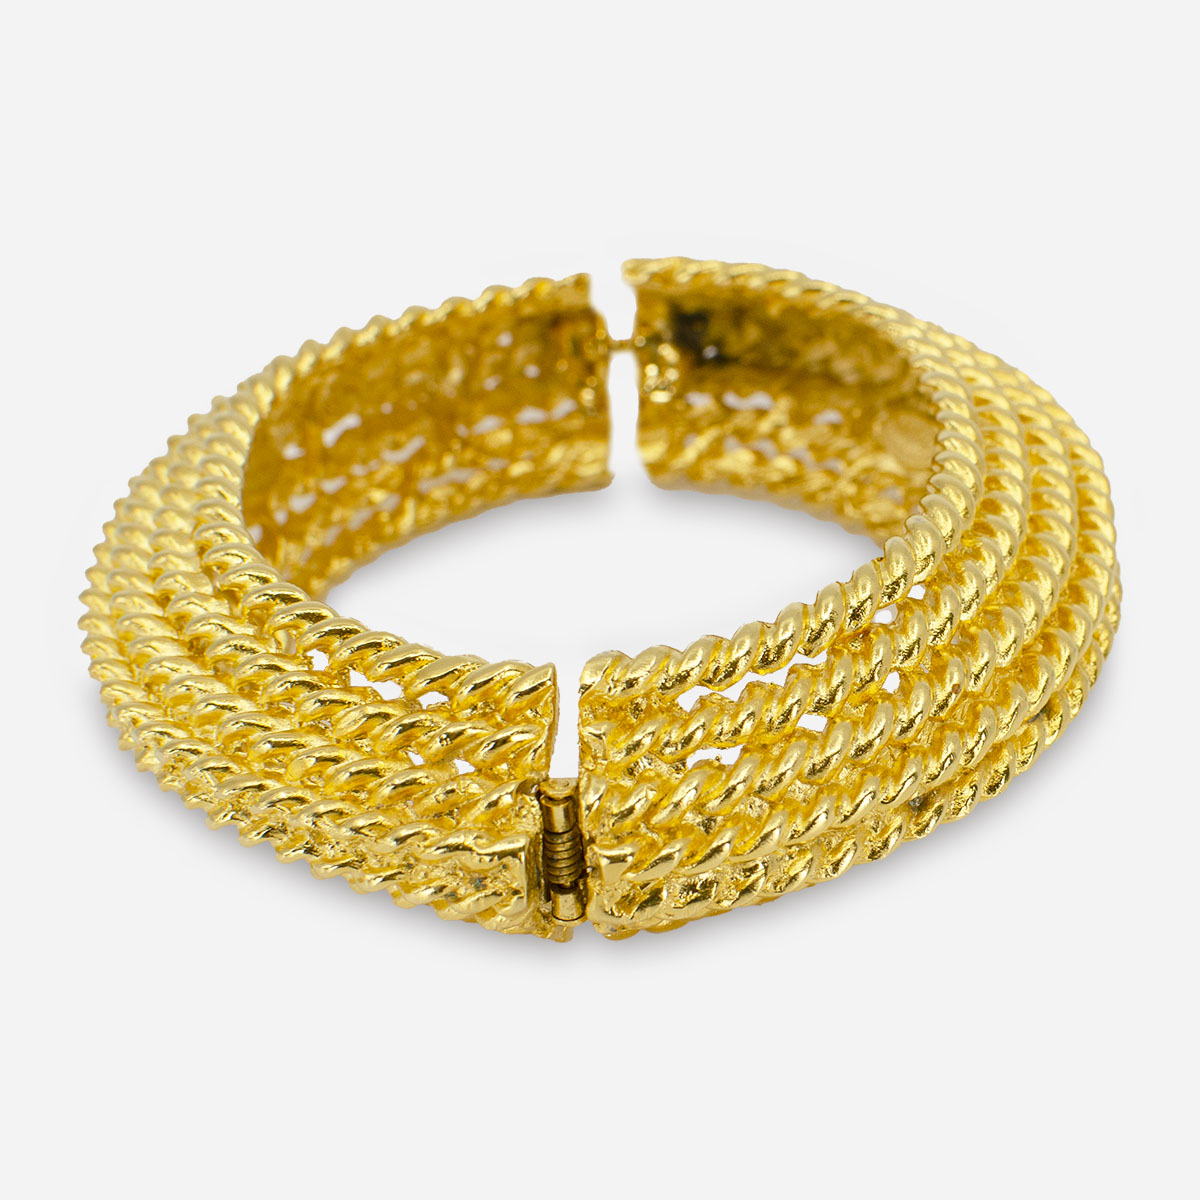 KJL gold braided bracelet